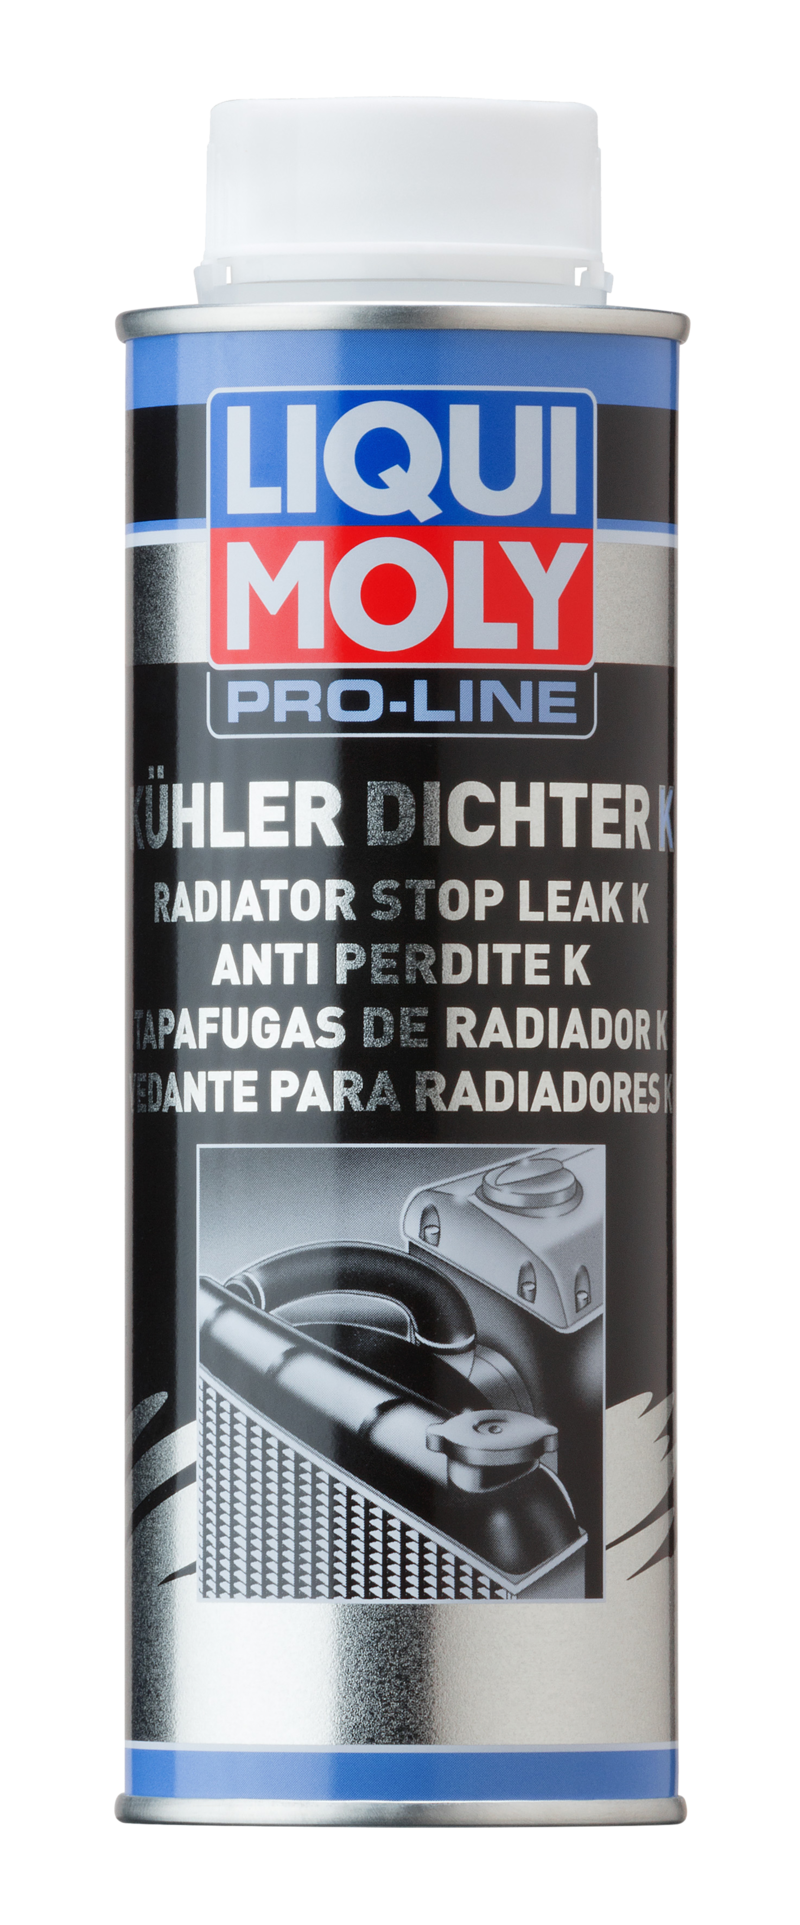 Pro-Line Tapafugas de radiador K (250 ML) Liqui Moly